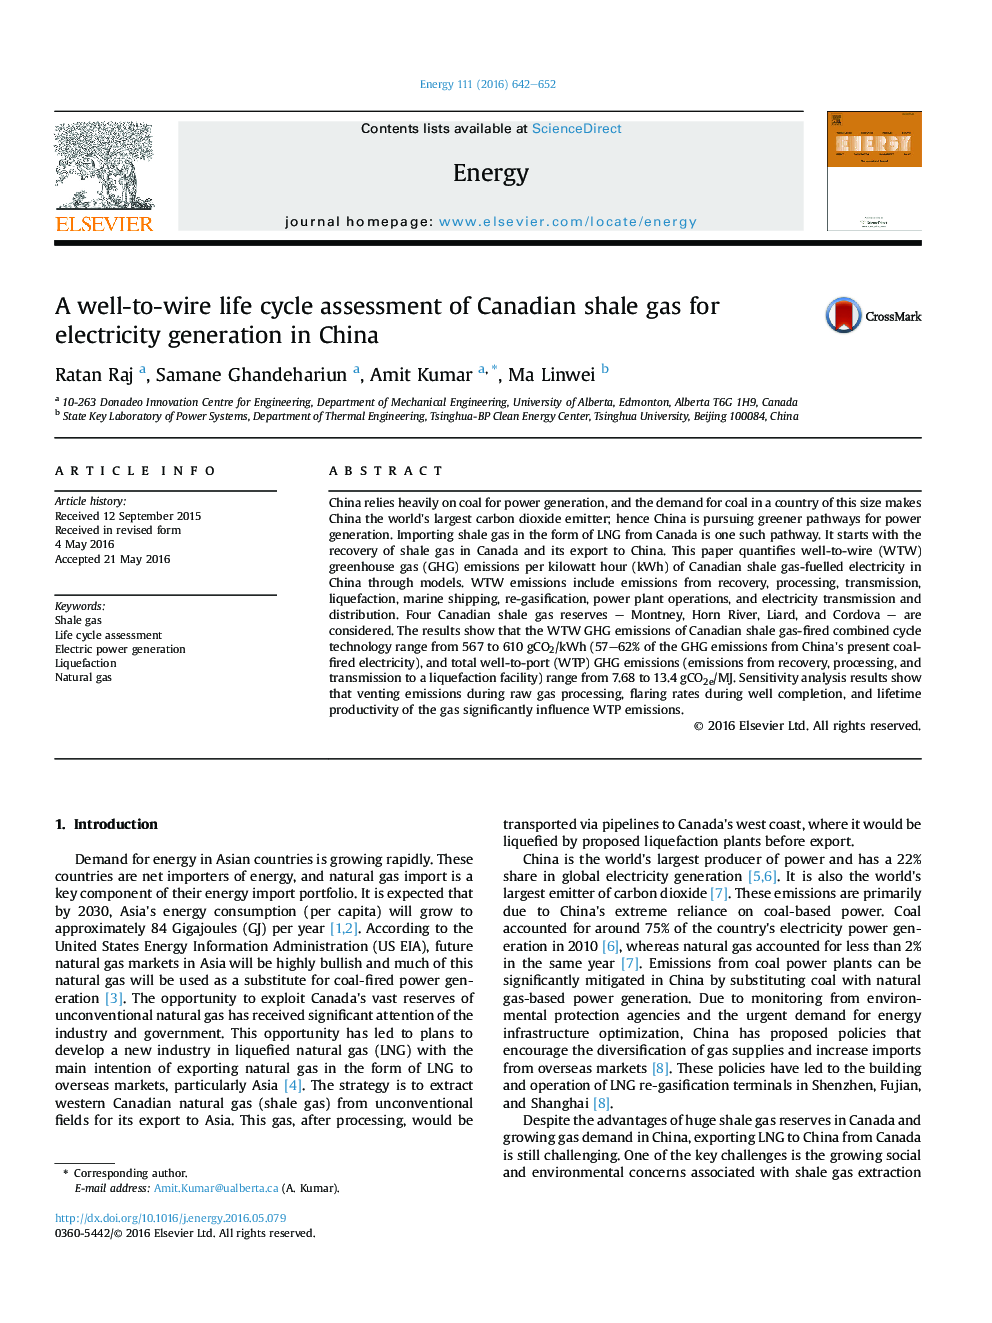 یک بررسی چرخه عمر مفید گاز شیل کانادا برای تولید برق در چین 